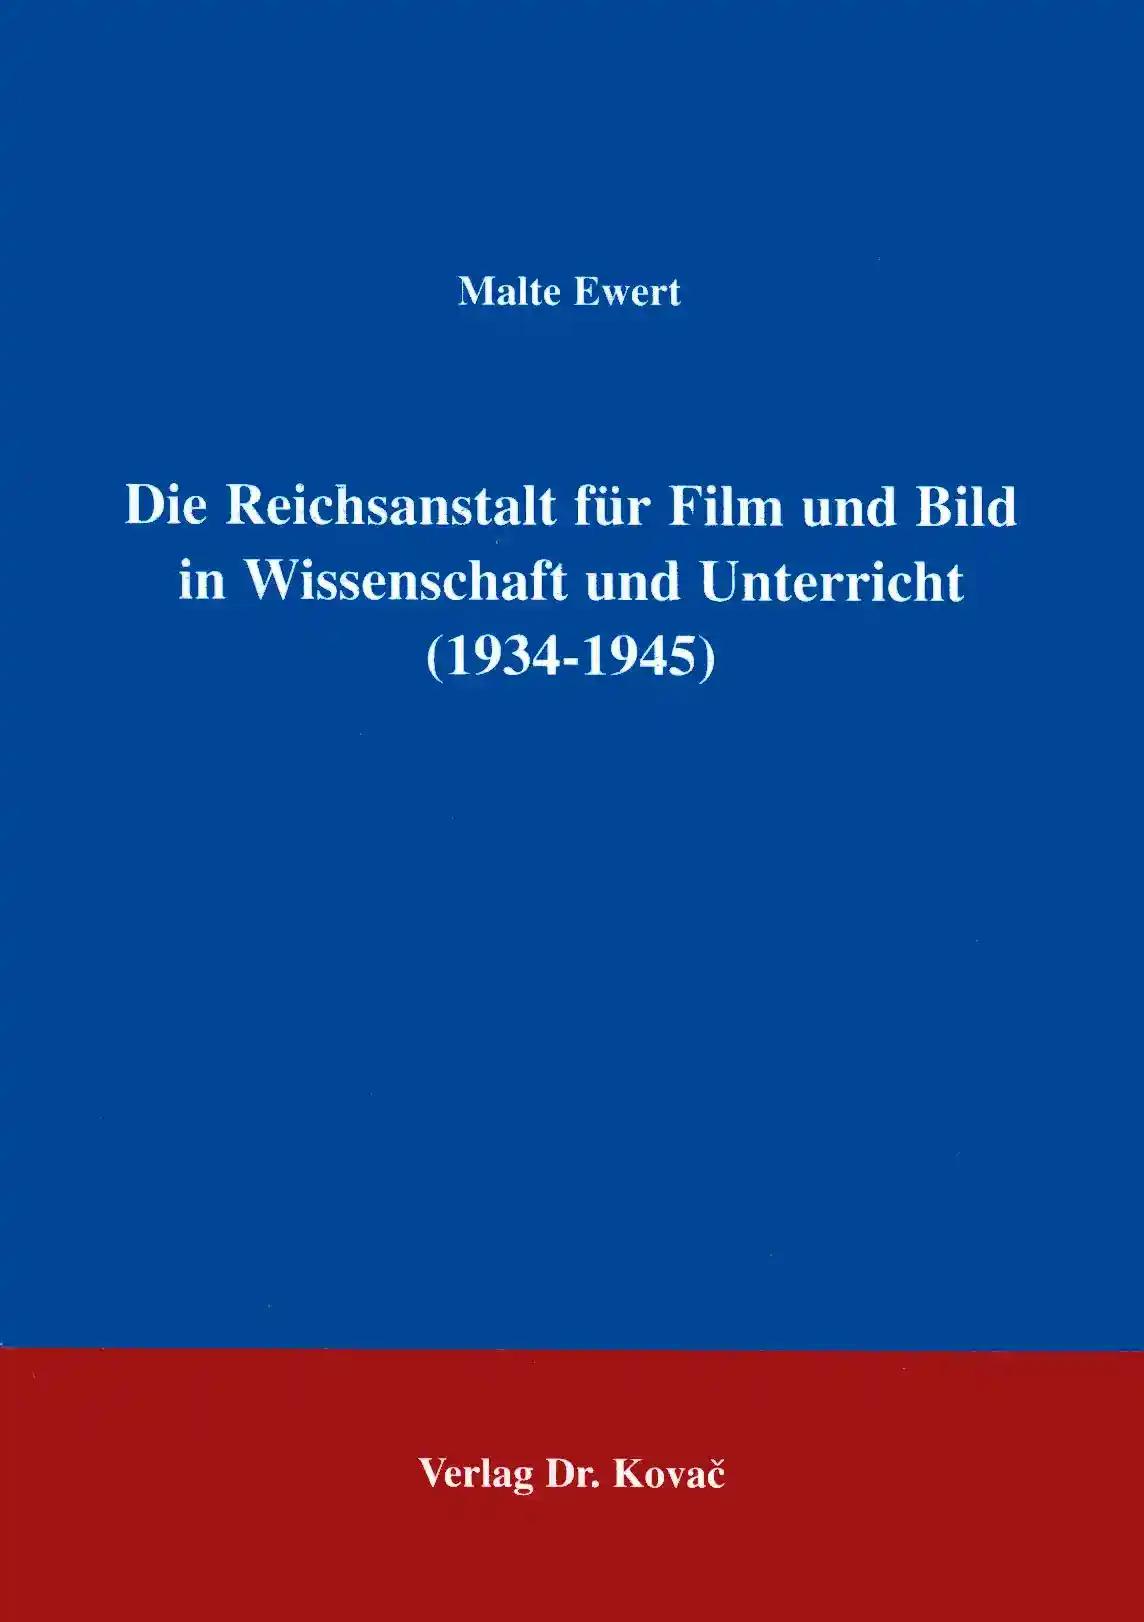 Die Reichsanstalt für Film und Bild in Wissenschaft und Unterricht (1934 - 1945) . (Schriften zur Kulturwissenschaft)